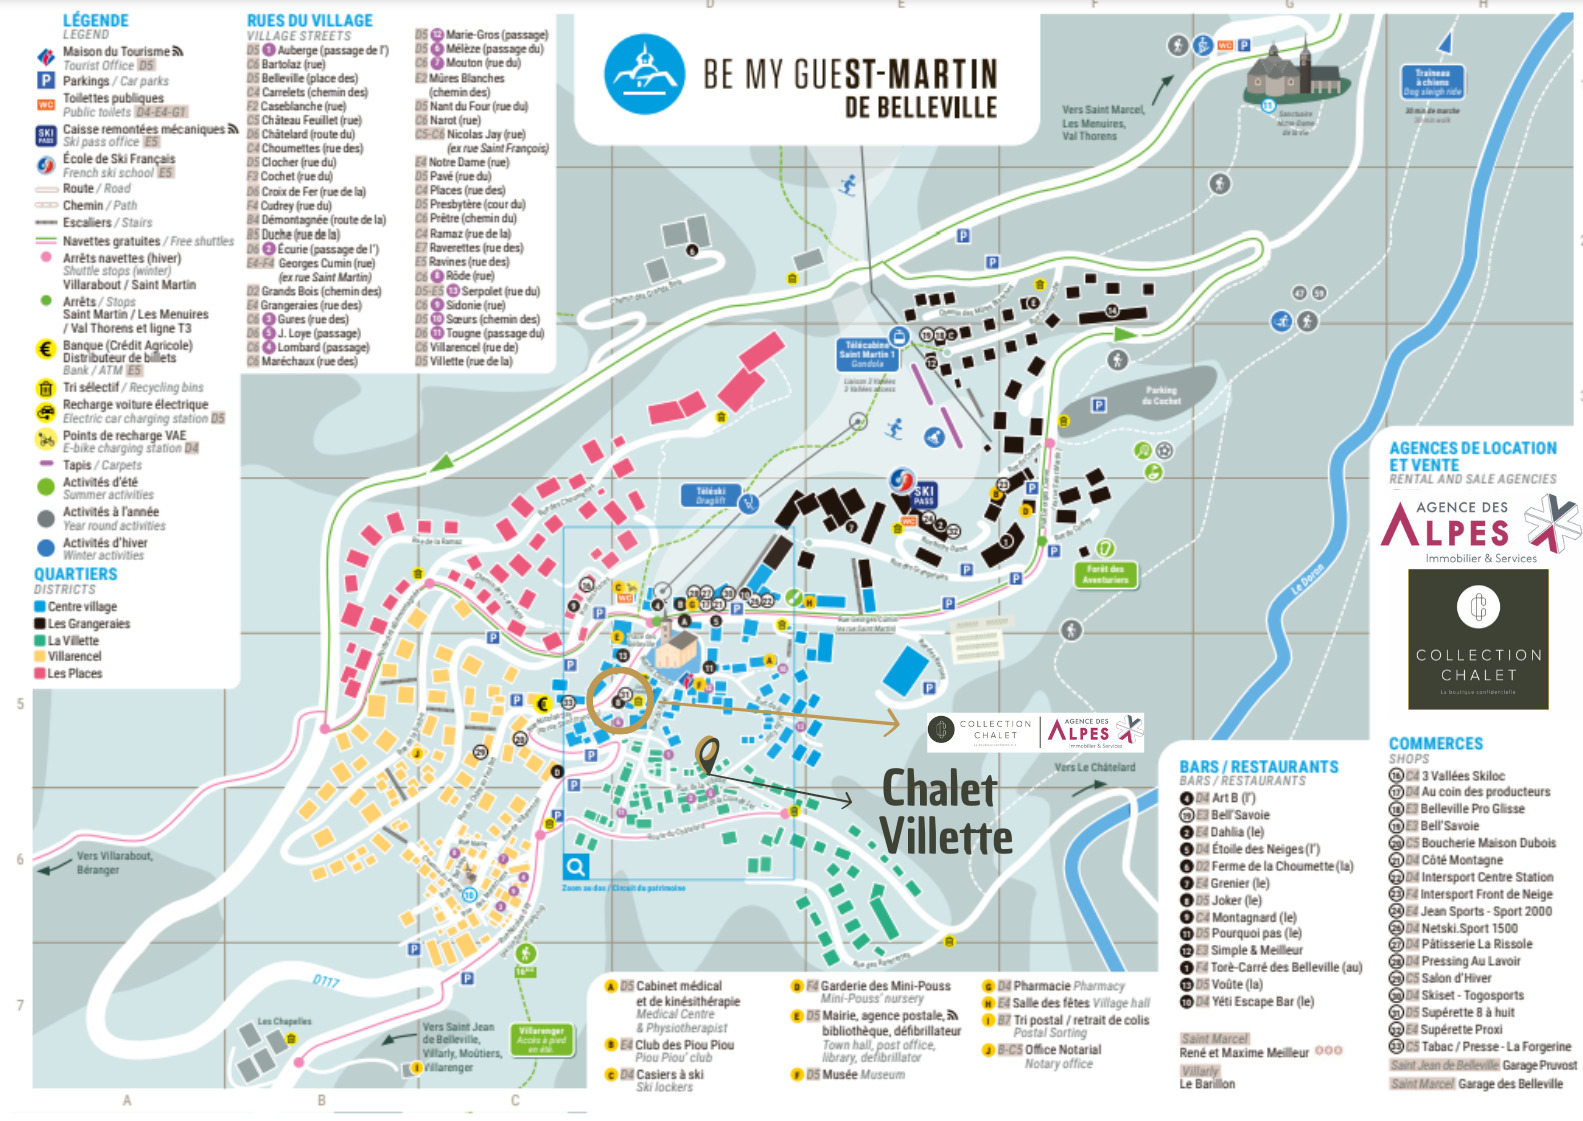 CHALET VILLETTE - Saint Martin de Belleville